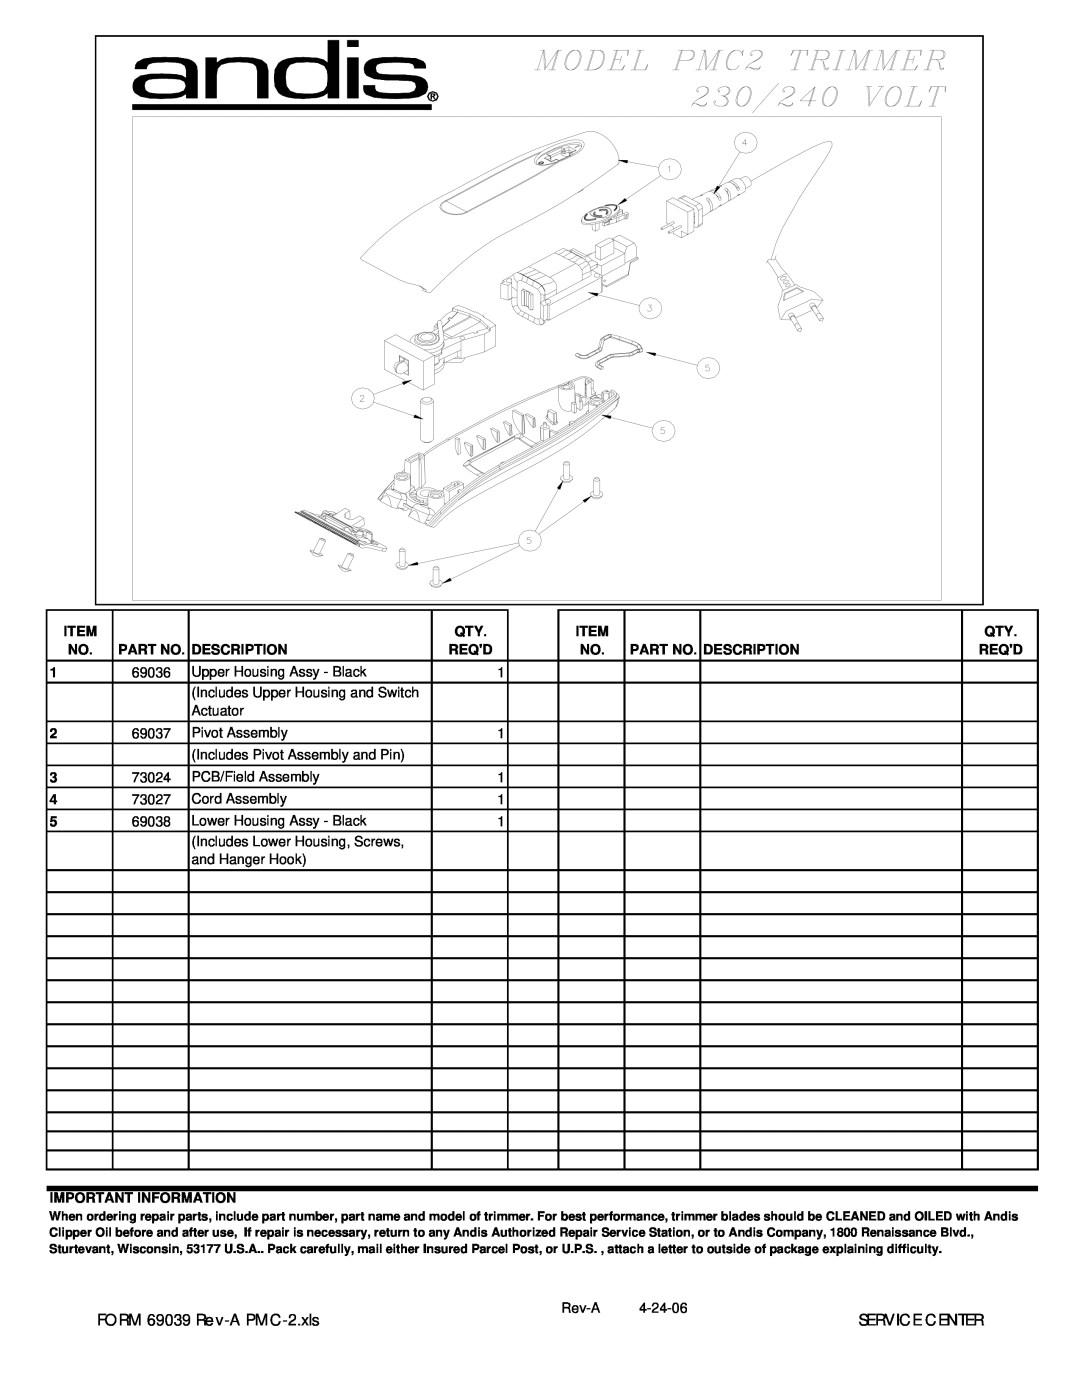 Andis Company manual FORM 69039 Rev-A PMC-2.xls, Service Center, Part No. Description, Reqd, Important Information 